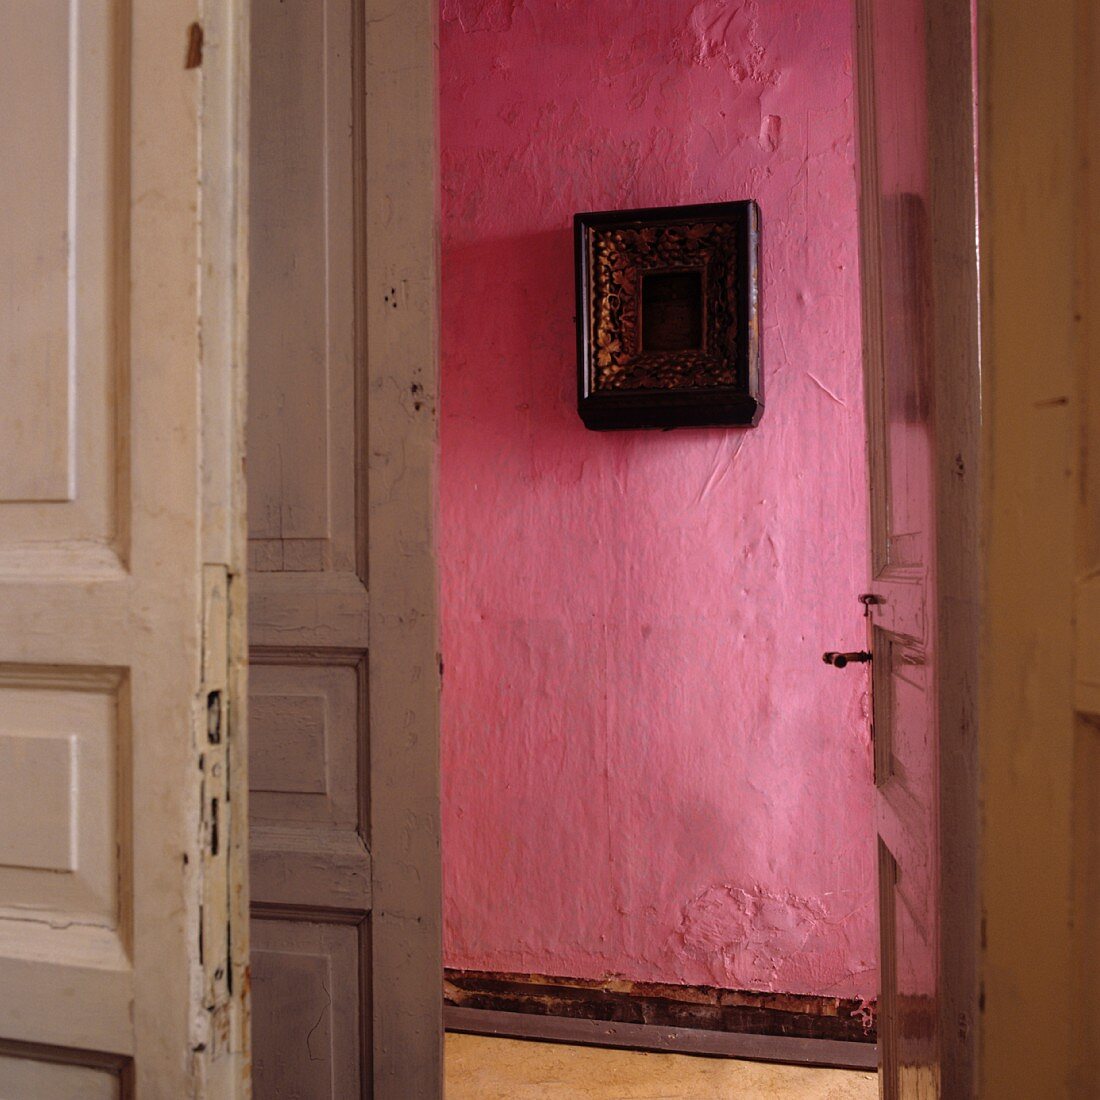 Blick durch offene Tür auf pinkfarbene Wand mit Bild im Flur einer Altbauwohnung